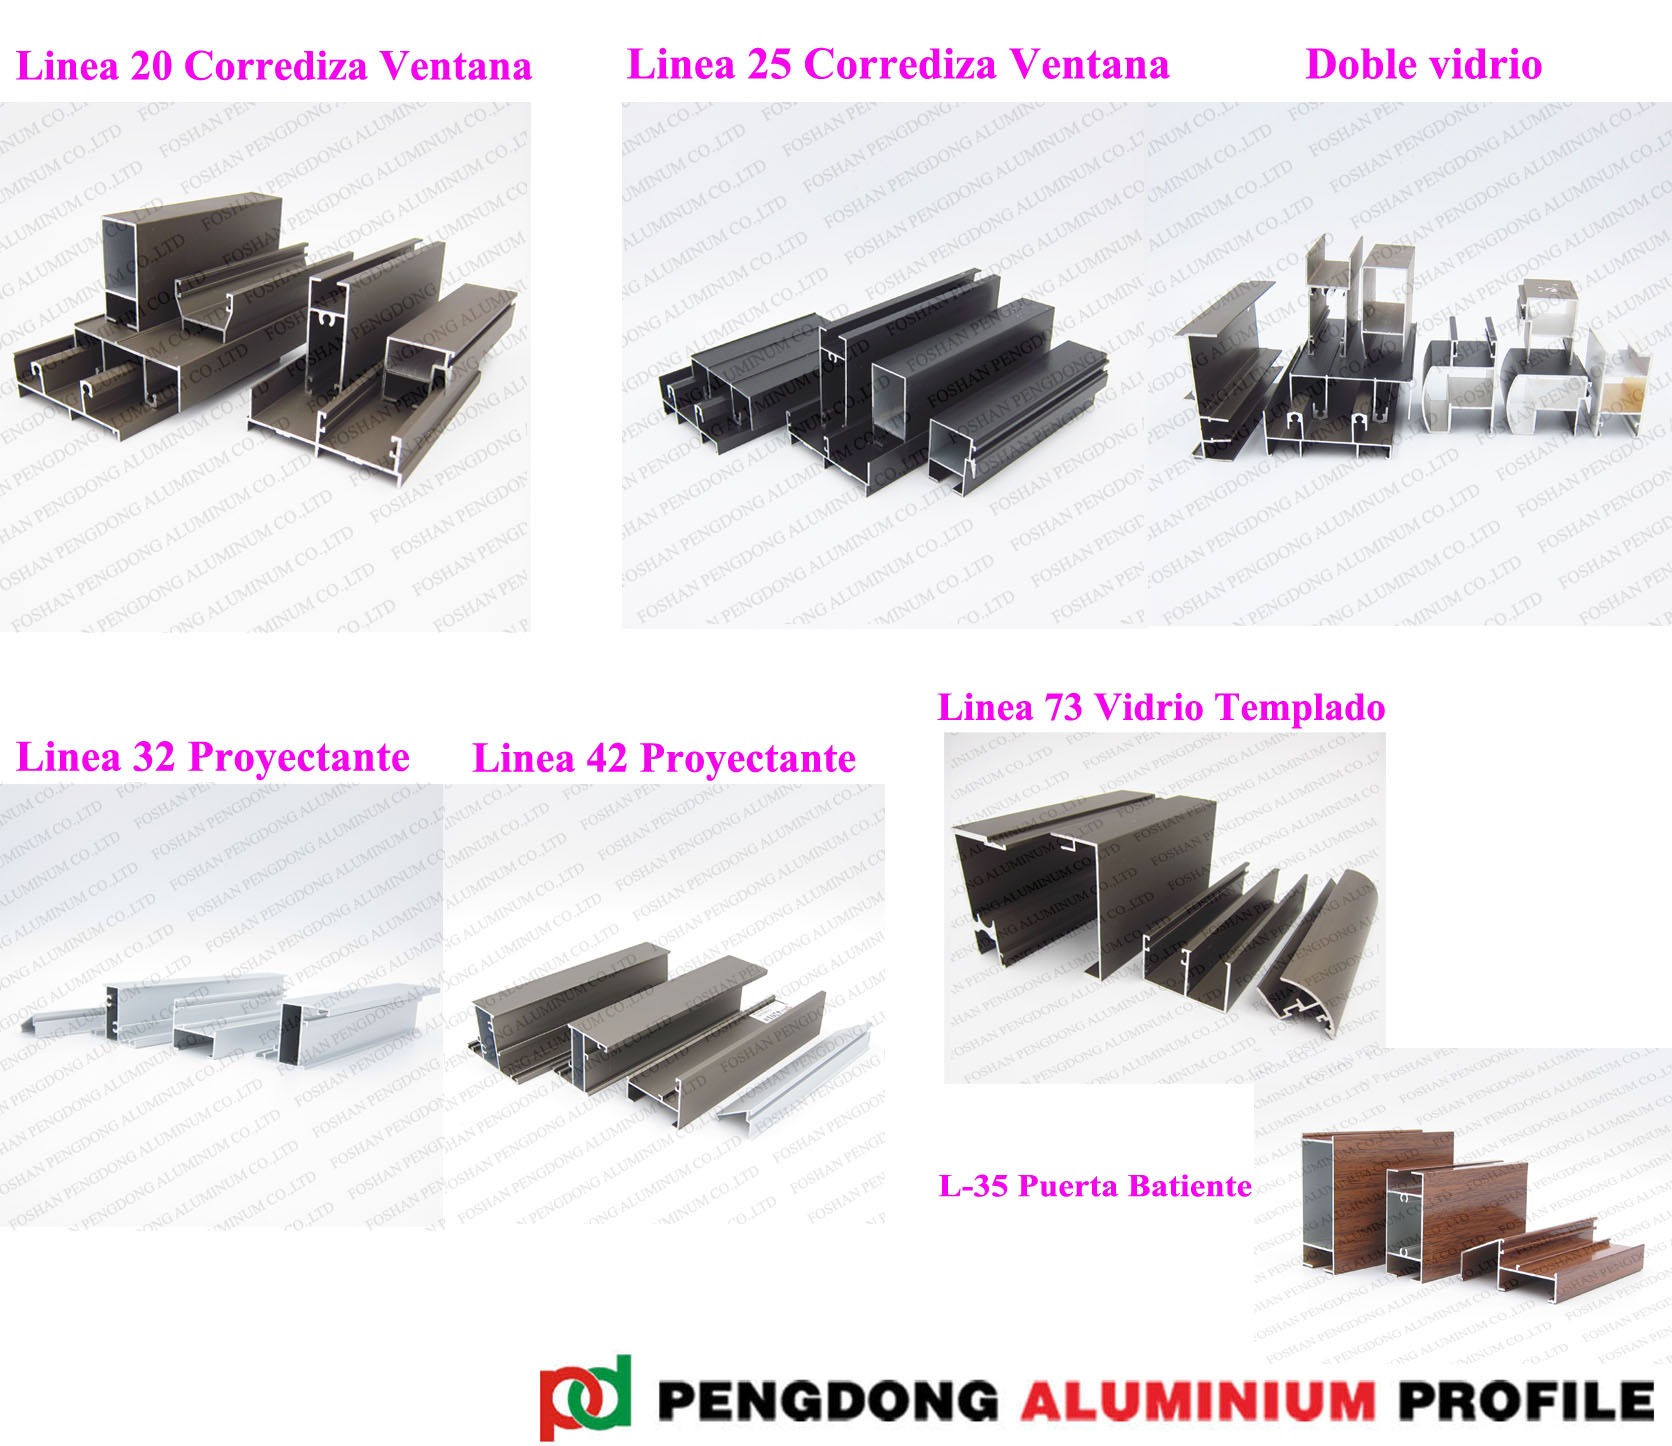 Aluminum Profiles For Linea 20 Linea 25